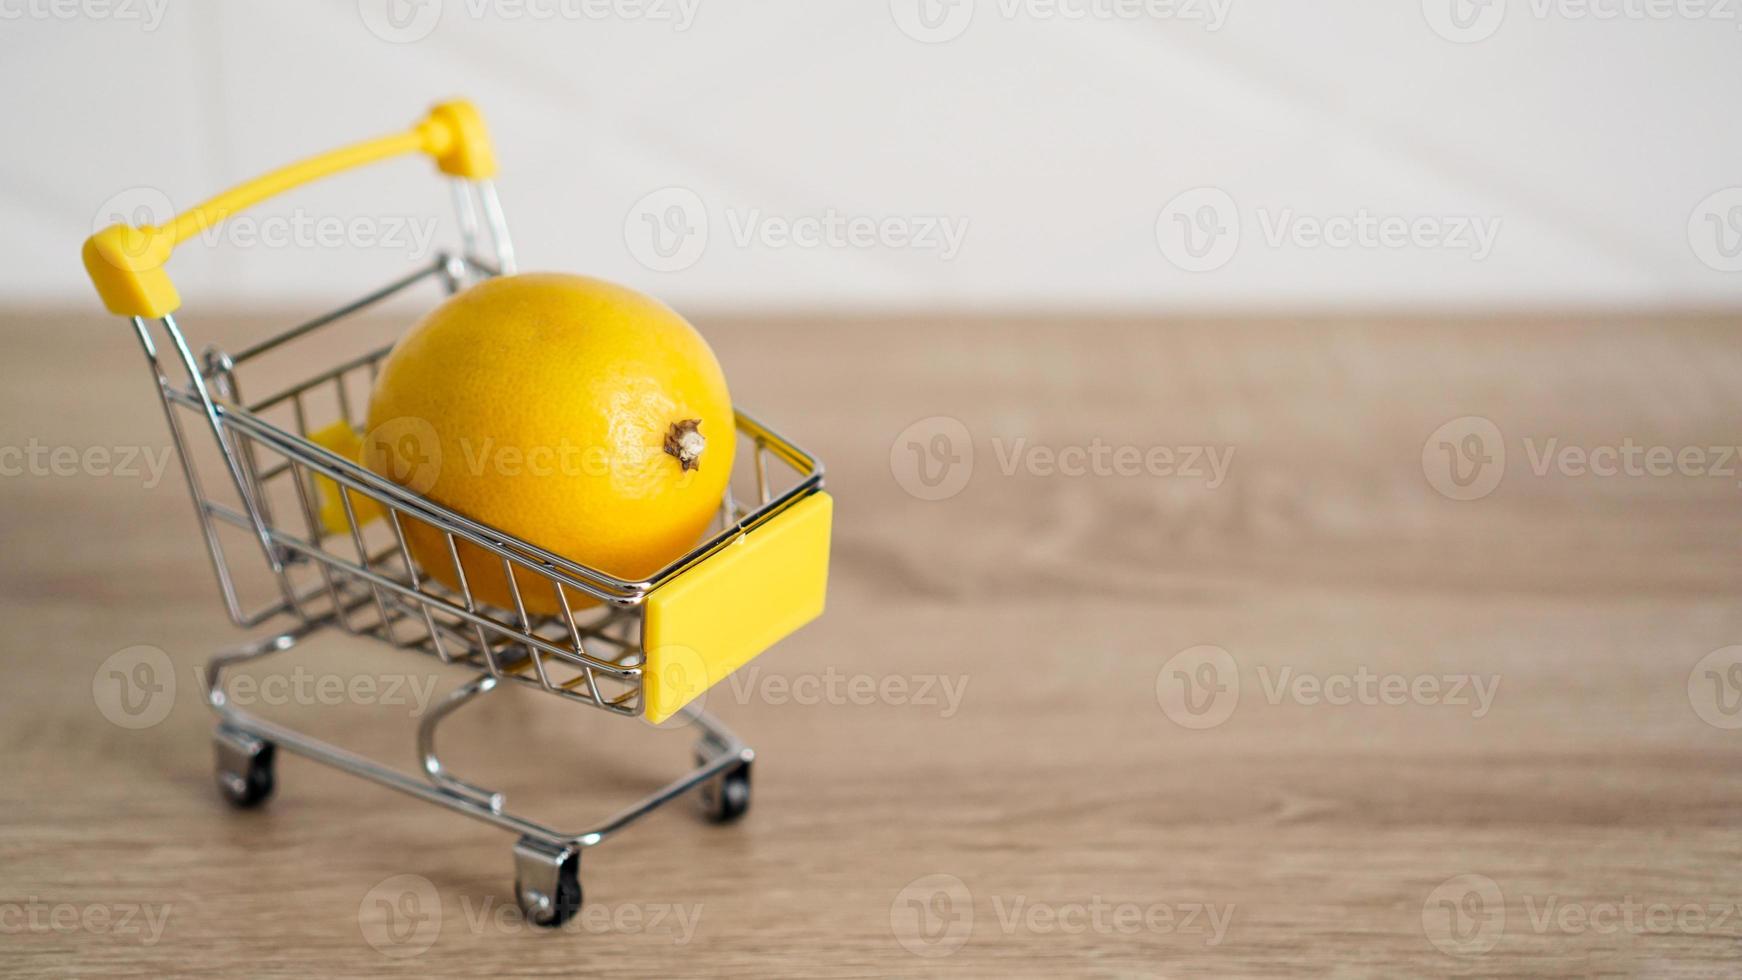 citron dans un chariot de supermarché sur cuisine photo